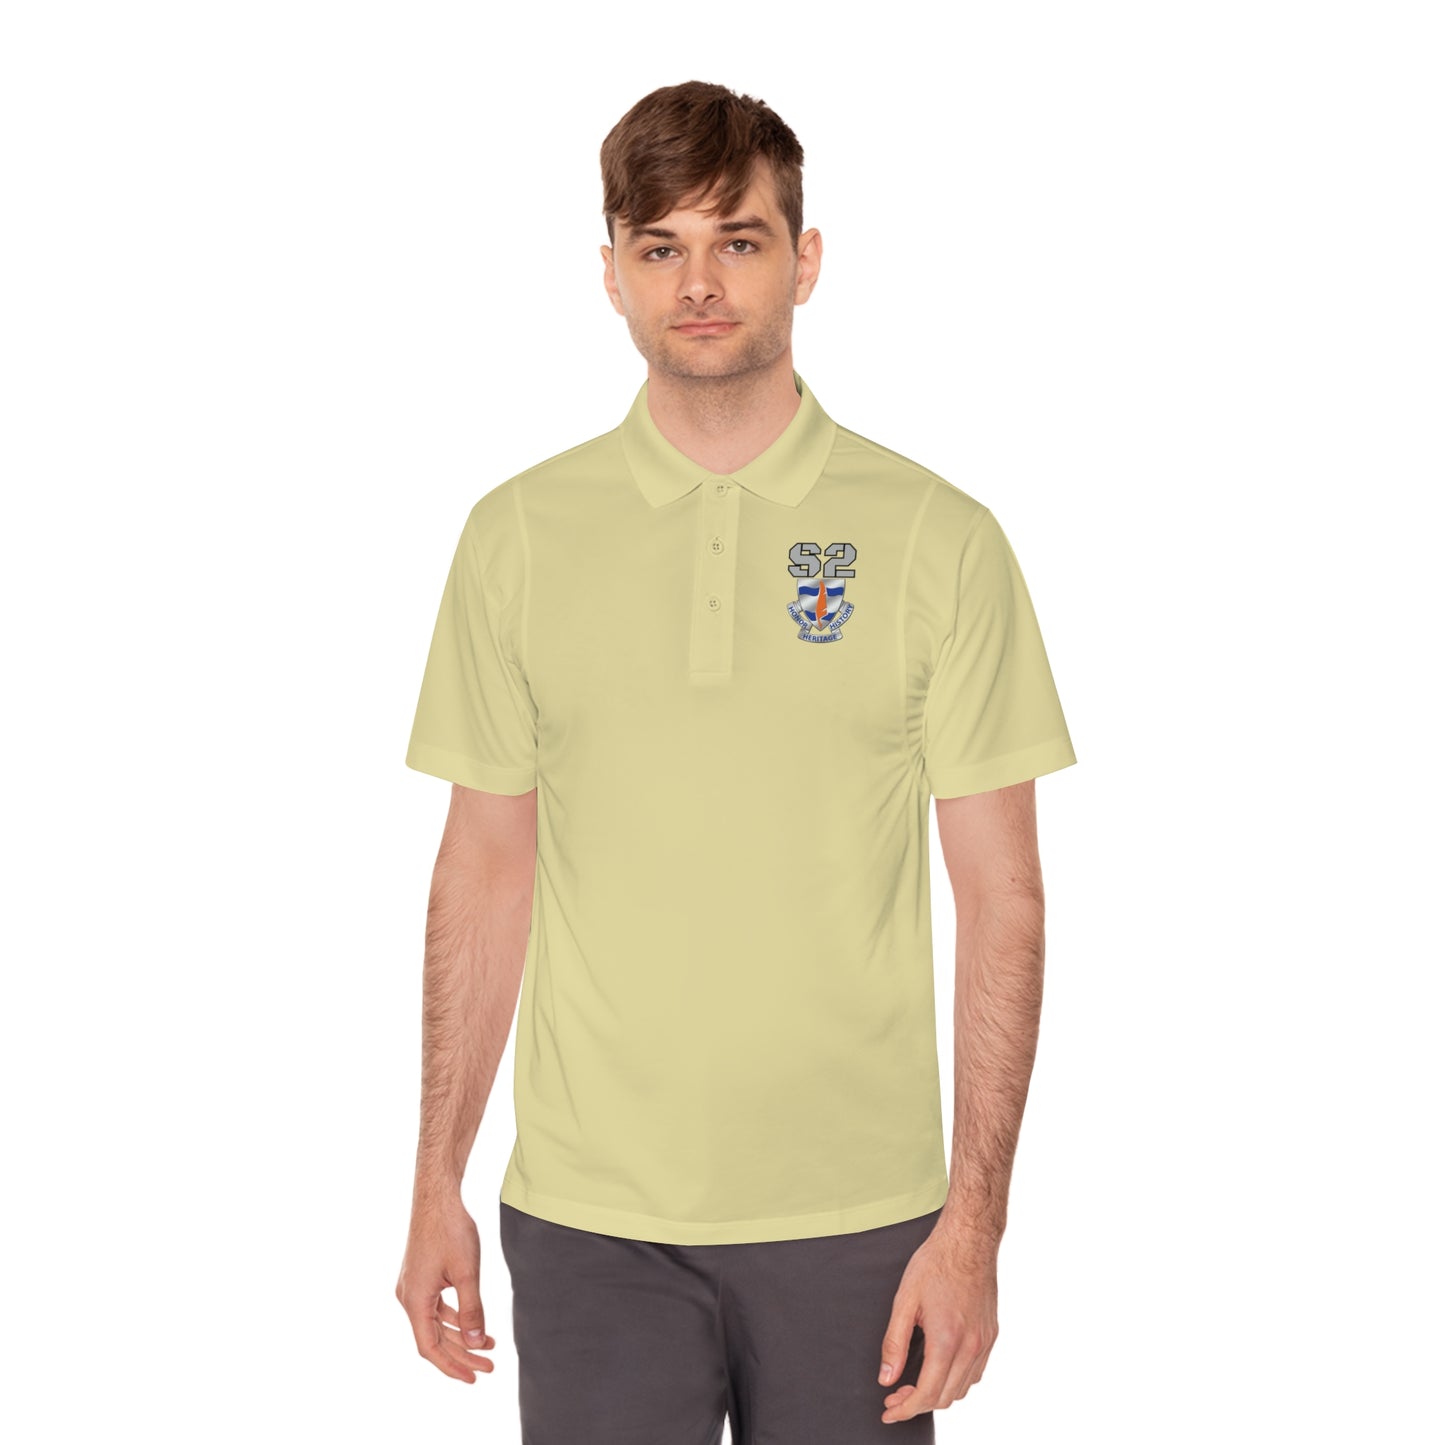 S2- Draft 2 - 102D SSB Polo Shirt - Back is Blank